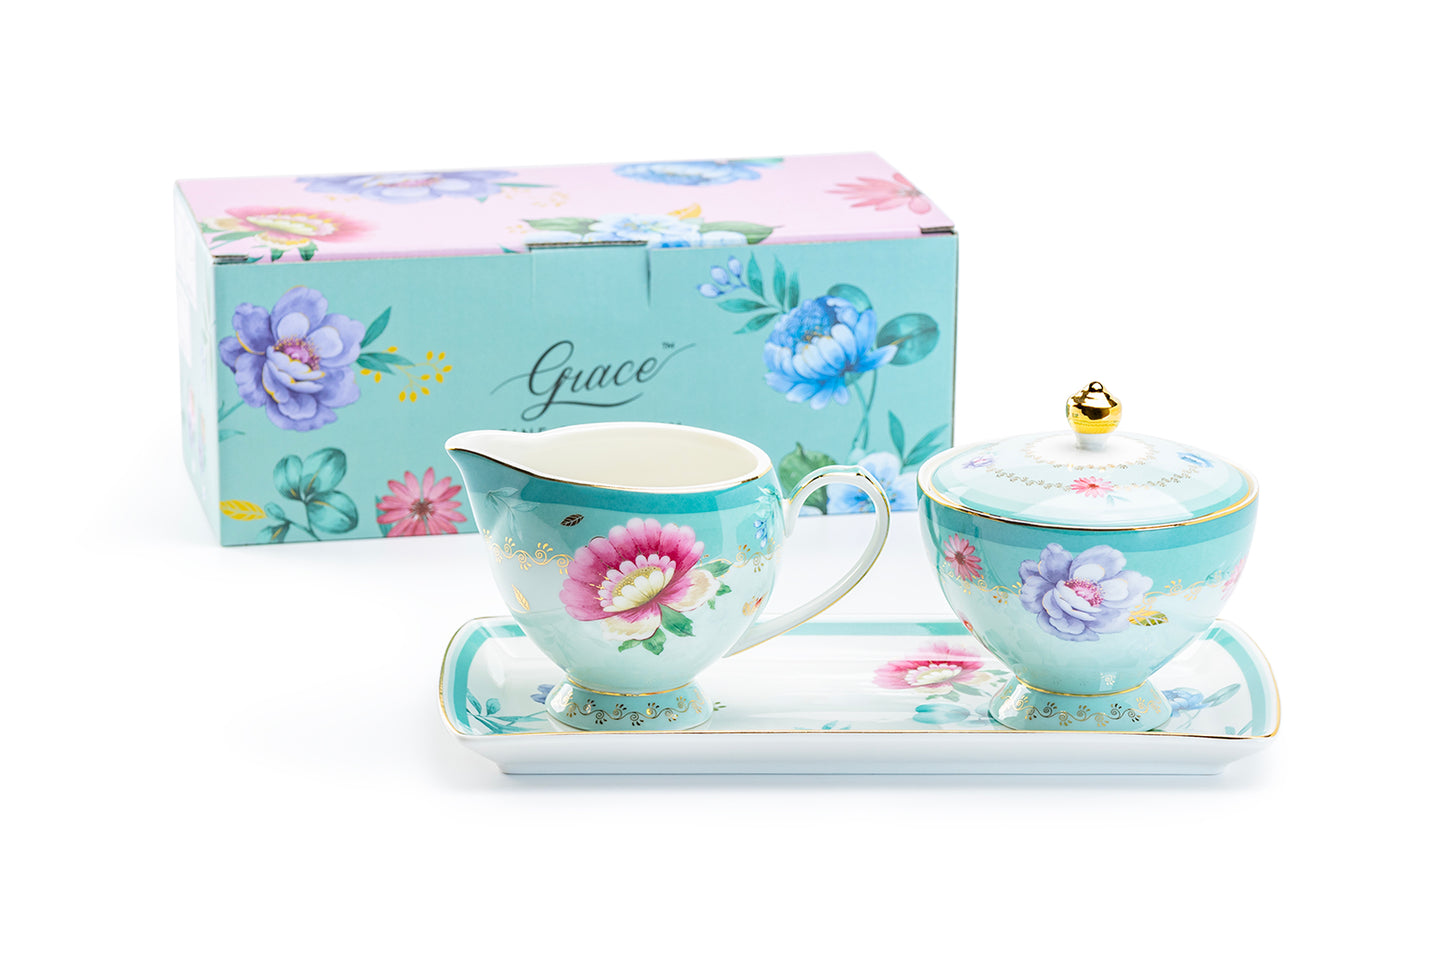 Grace Teaware Gift Boxed Mint Floral Garden Fine Porcelain Sugar Creamer & Serving Tray Set